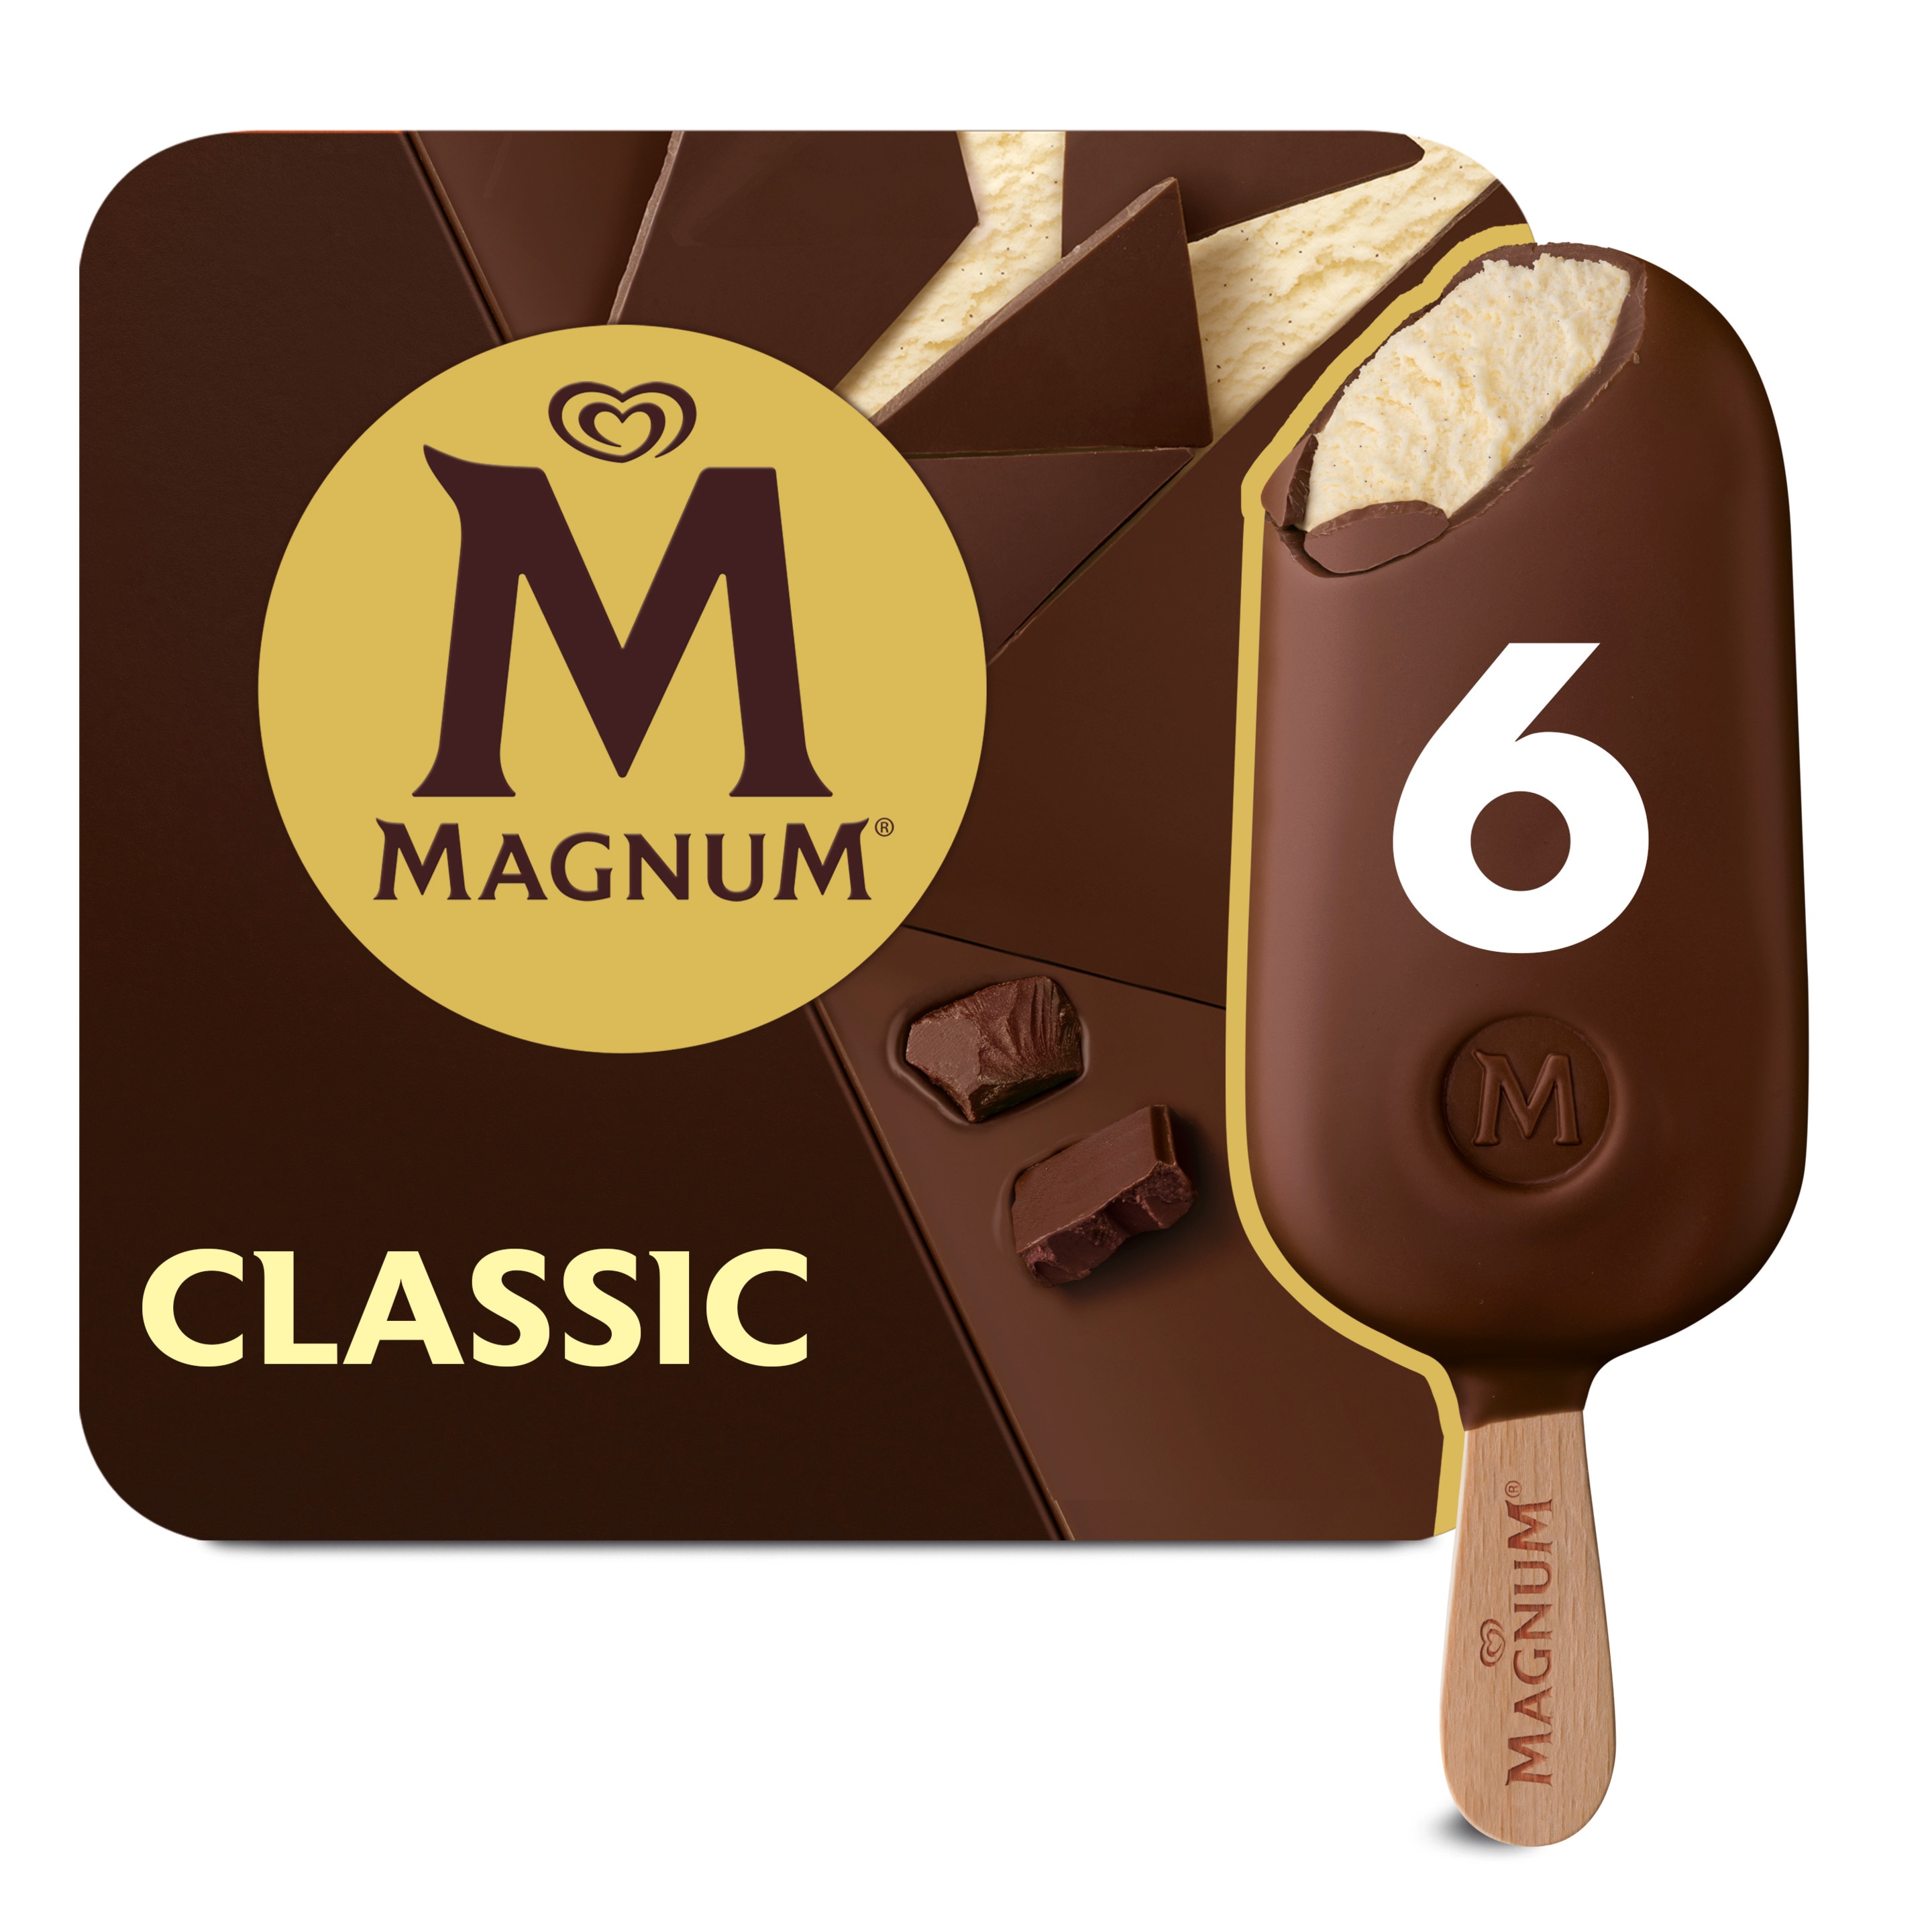 Magnum Classic 6 x 100 ml